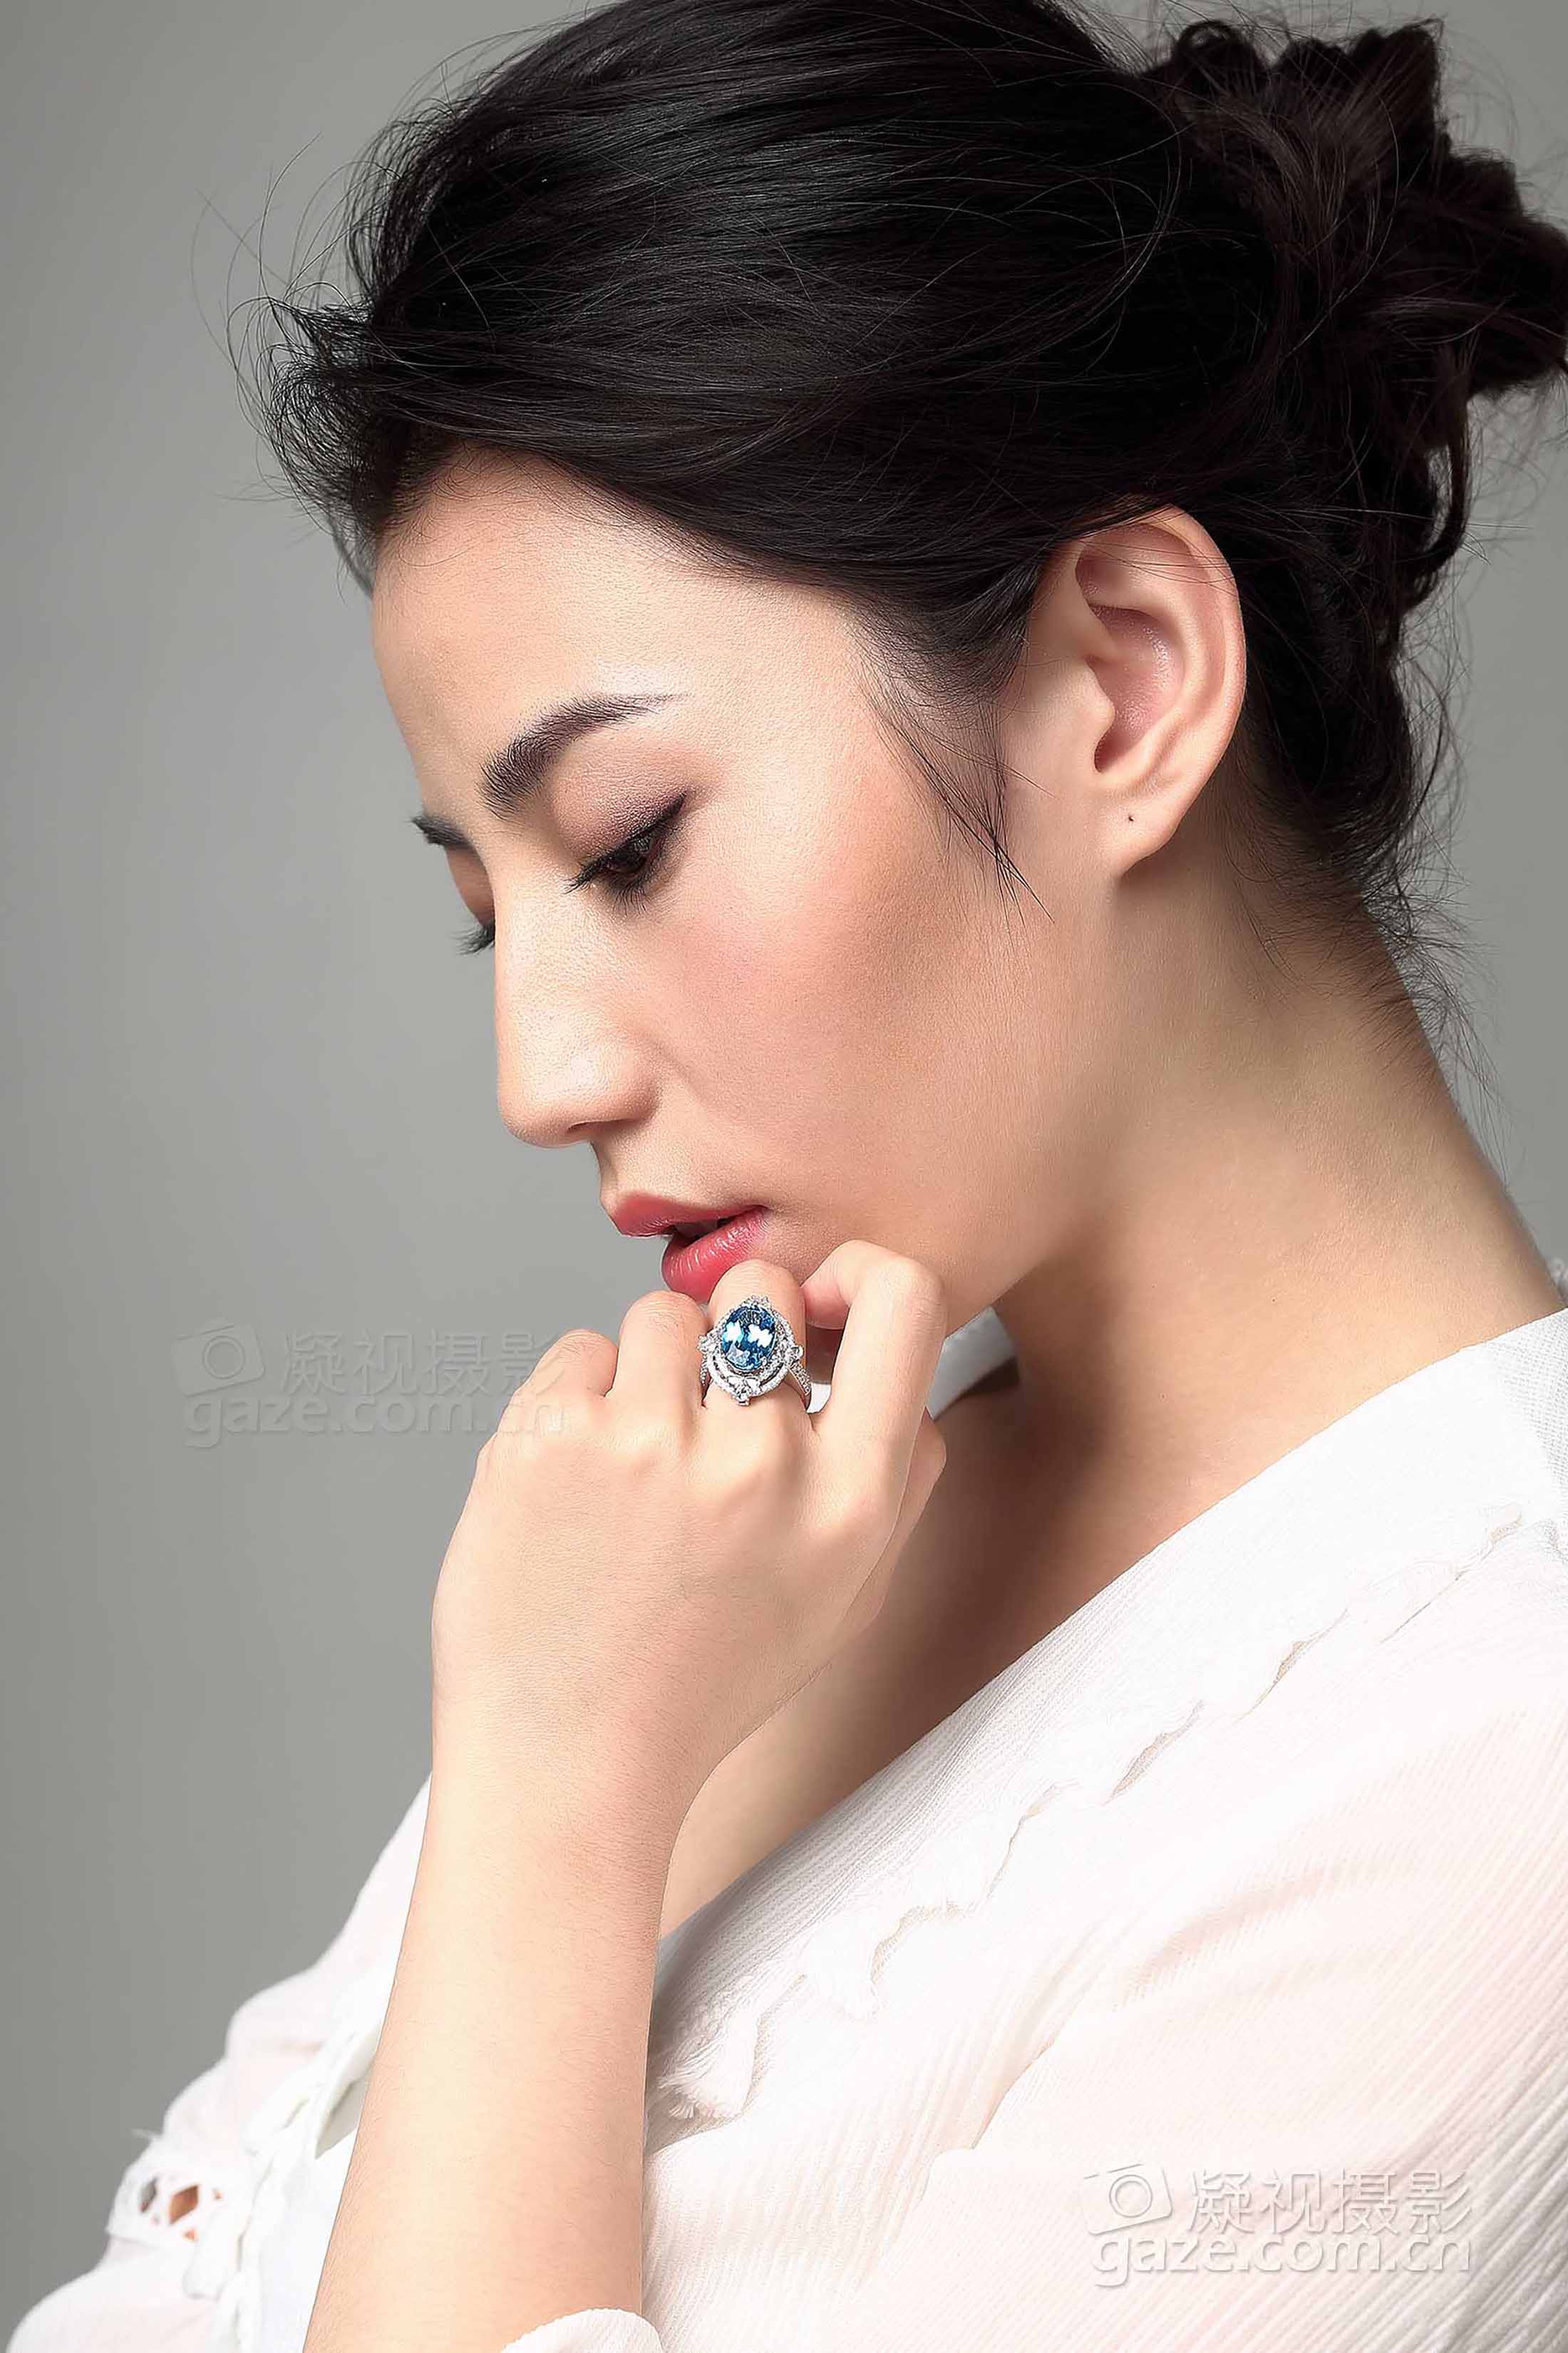 彩宝戒指模特佩戴摄影 实景环境拍摄 北京北京商业摄影公司 北京珠宝